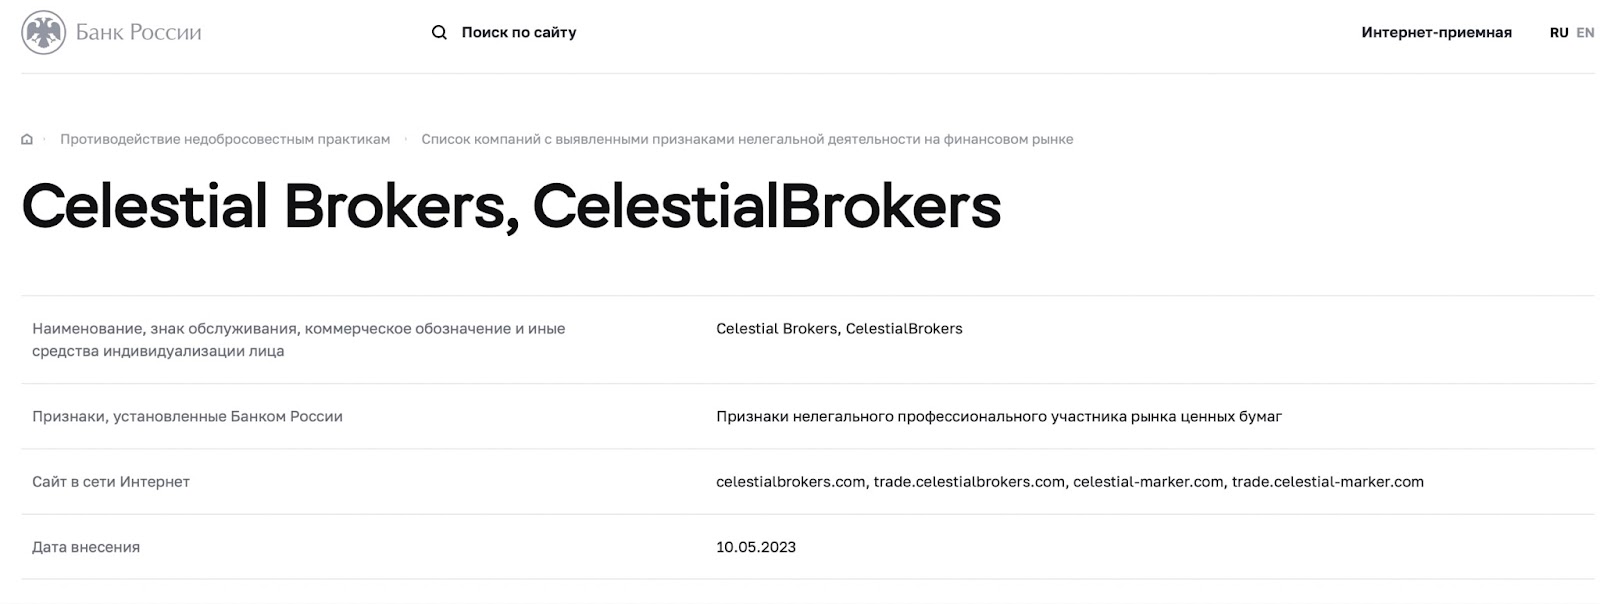 Celestial Marker: отзывы клиентов о работе компании в 2023 году